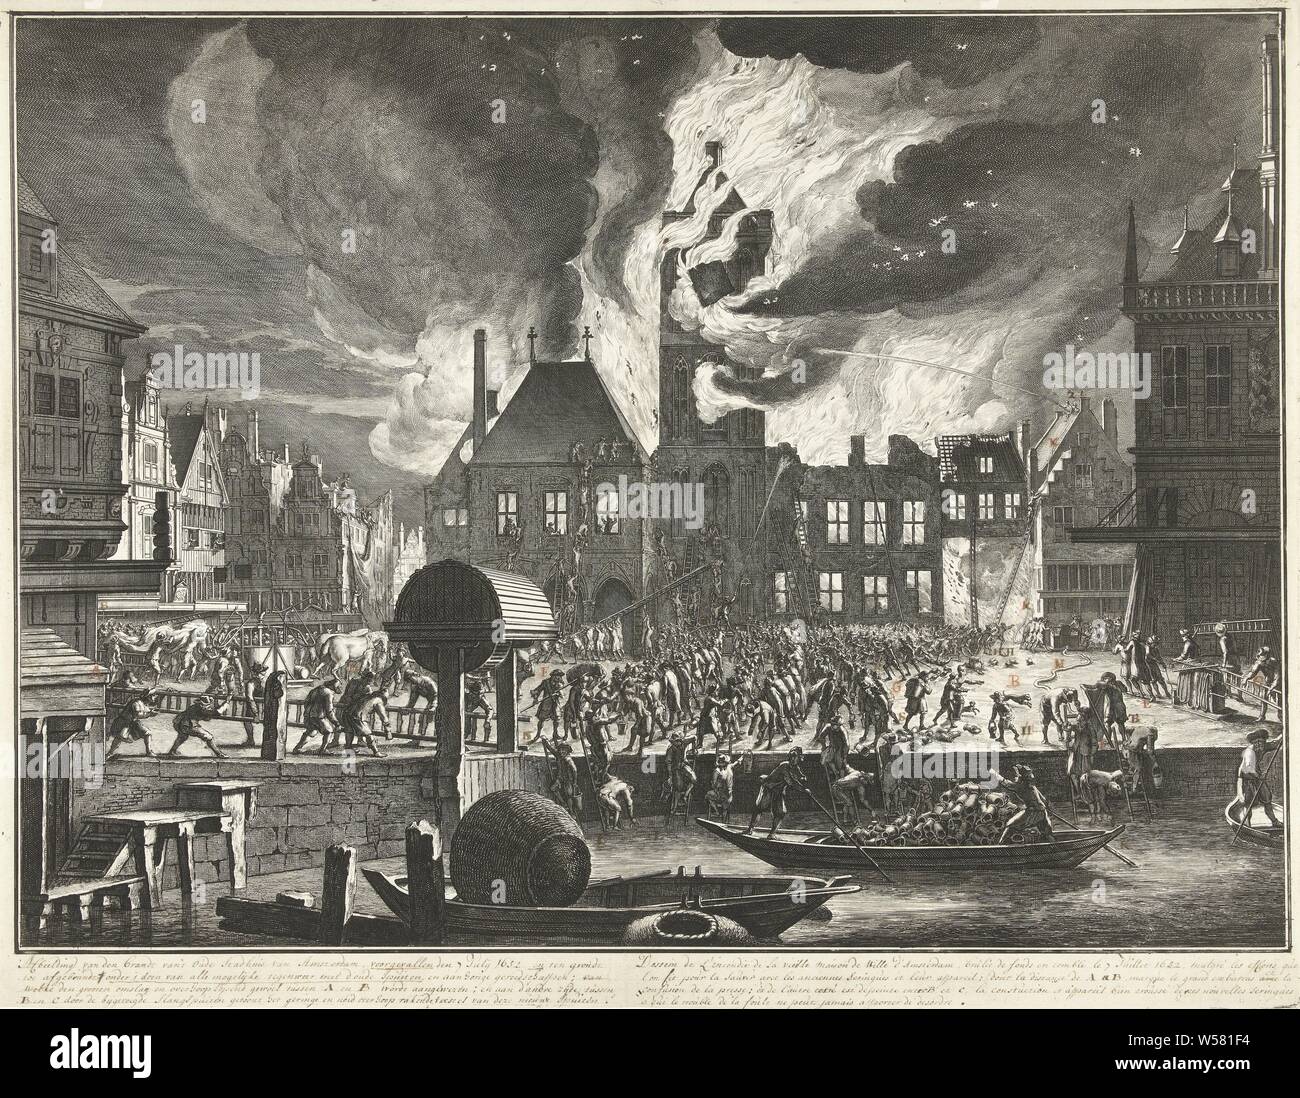 L'incendie dans l'Ancien hôtel de ville d'Amsterdam, 1652, le feu dans l'Ancien hôtel de ville d'Amsterdam et quelques bâtiments voisins le 7 juillet 1652. Pour illustrer l'ancienne et la nouvelle façon d'éteindre le feu. Sur la gauche, des seaux et des échelles tentent d'éteindre le feu, à droite, le feu s'est battu avec le feu de pulvérisation. Avec quatre lignes manuscrites sous-titrer en néerlandais et en français et des lettres manuscrites sur le spectacle. Plus tard membres (avec la lettre) sont dans la plaque 3 Jan van der Heyden. Brandspuitenboek, En feu, en feu, la lutte contre l'incendie, d'extinction d'équipement, mairie, Hôtel de Ville d'Amsterdam (14e siècle Banque D'Images